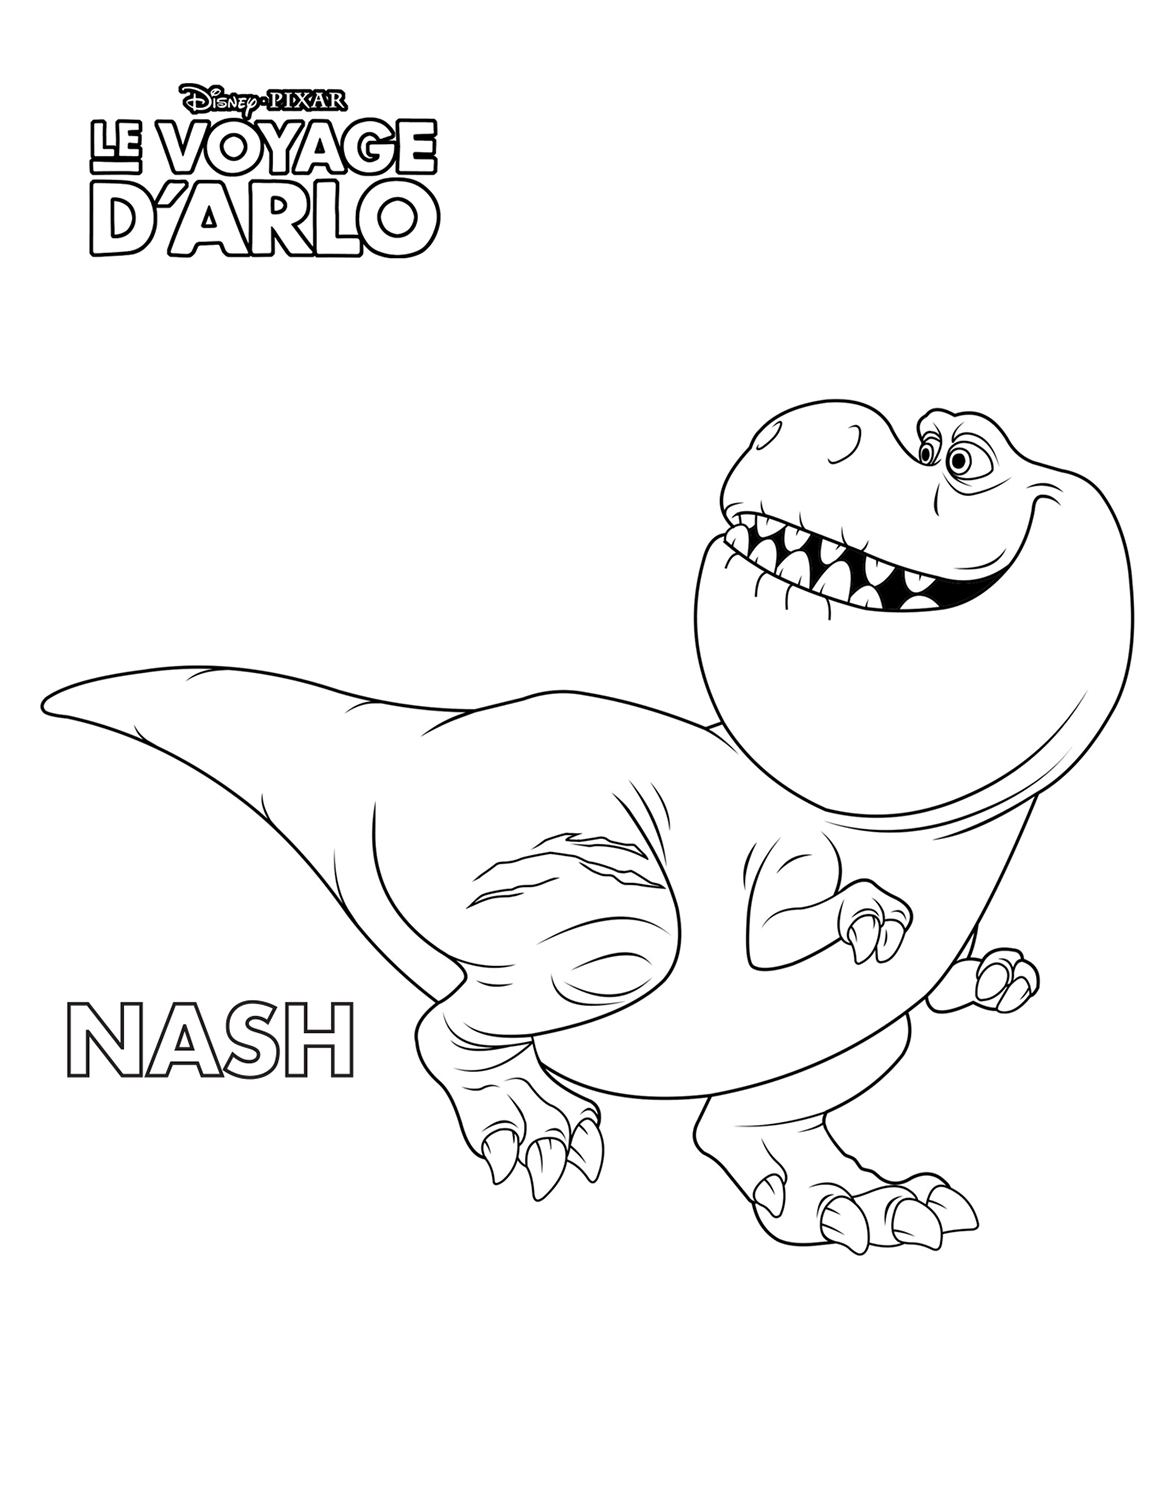 Nash est un Tyrannosaure mâle